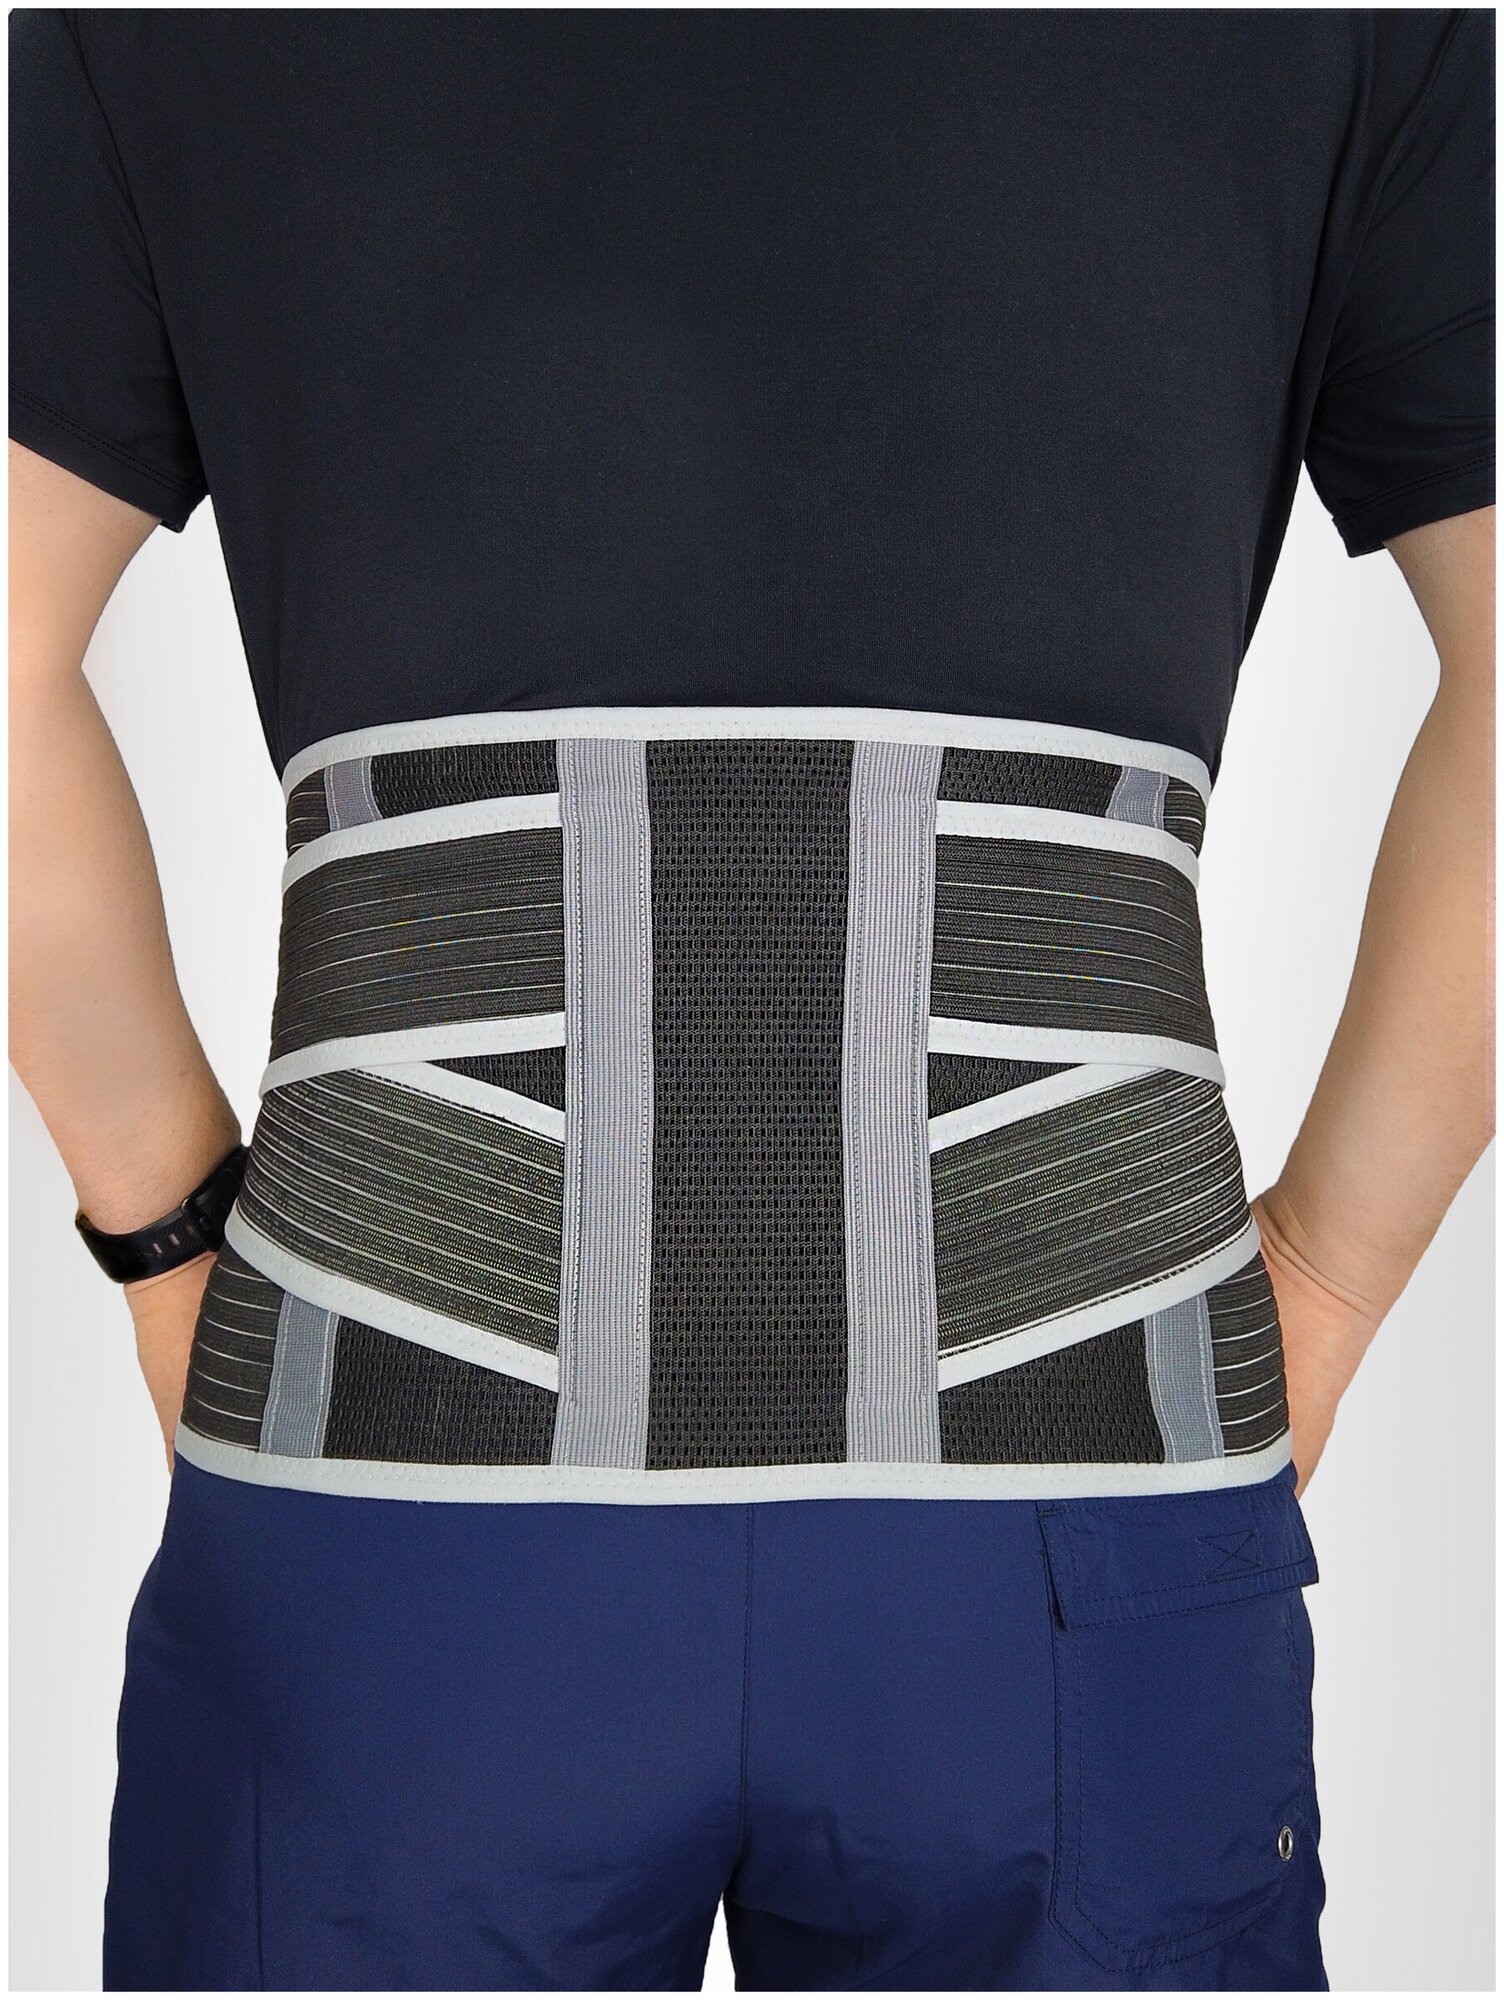 Бандаж-корсет для поддержки спины пояснично-крестцовый c моделируемыми ребрами жесткости MedicalLine SL B05, черный L